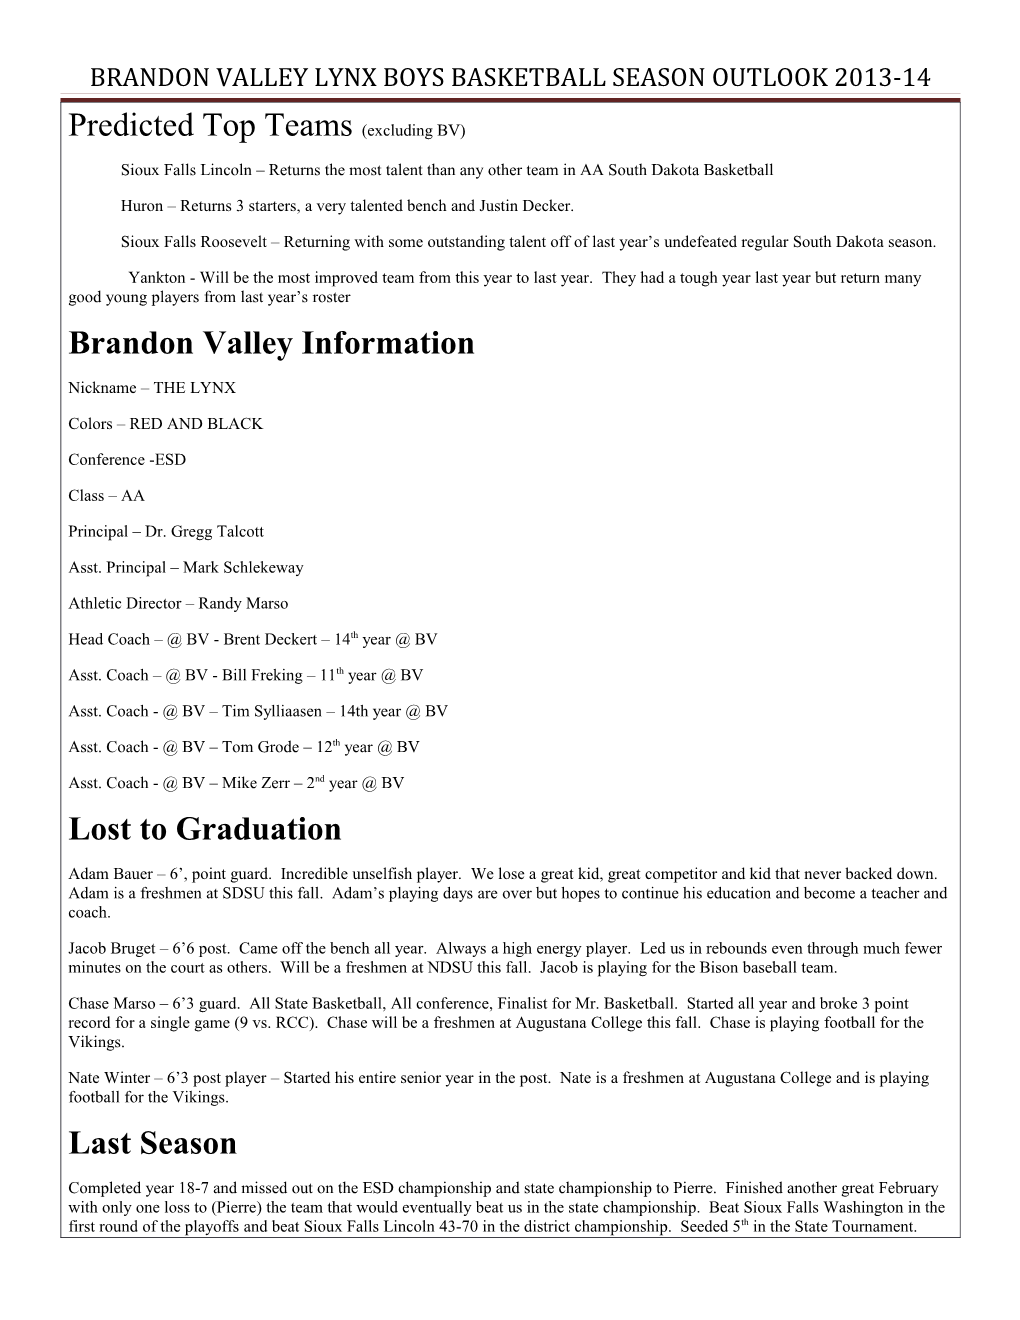 Brandon Valley Lynx Boys Basketball Season Outlook 2013-14